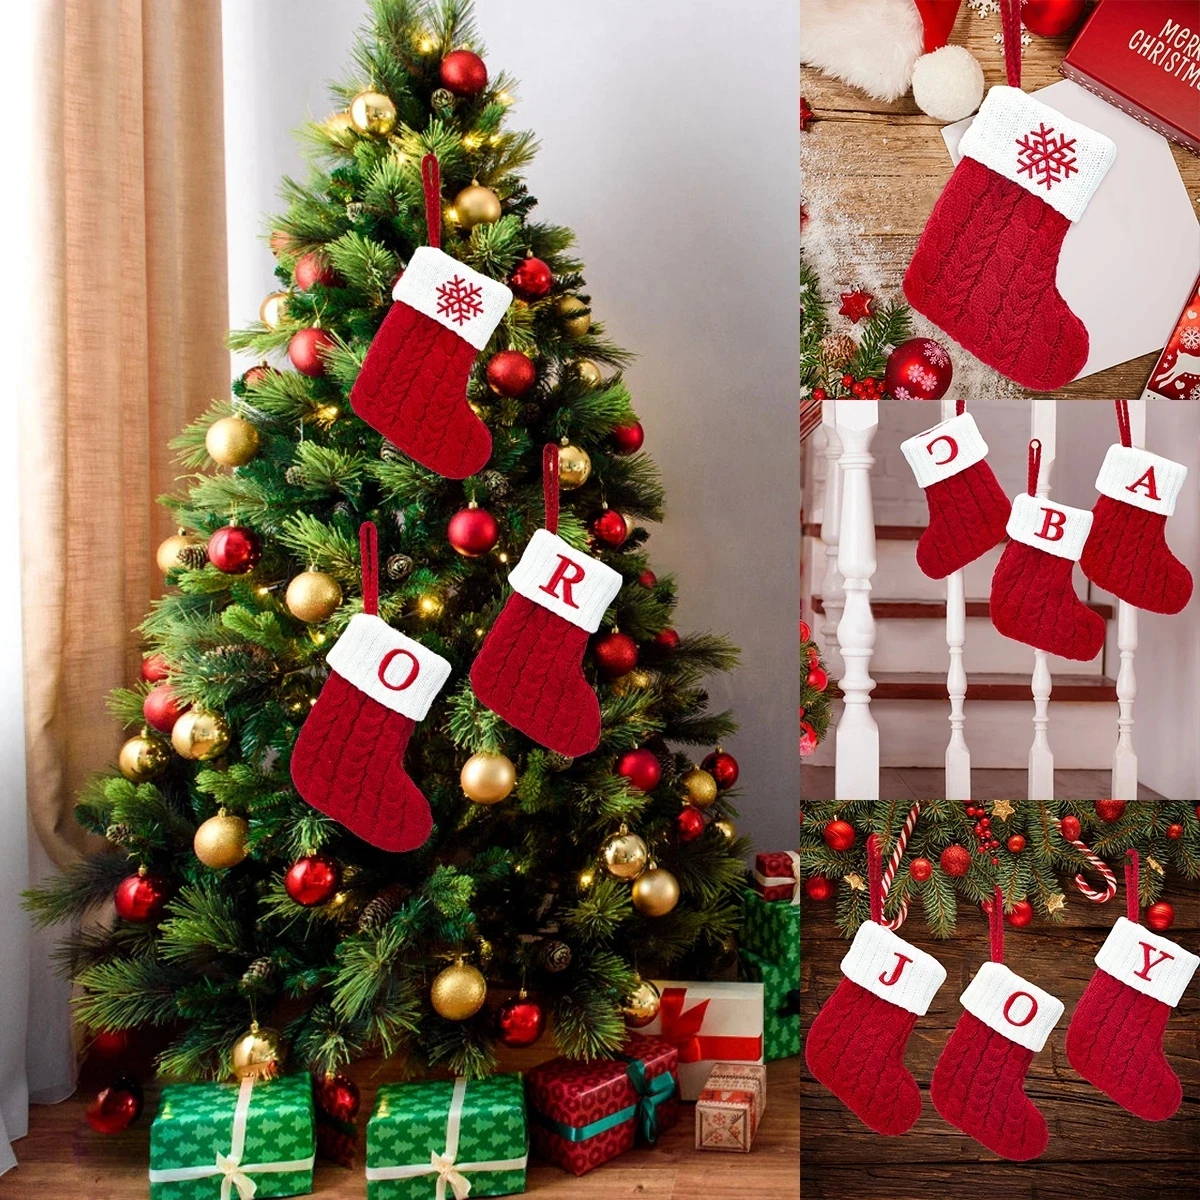 

Рождественские носки с буквами алфавита в виде красных снежинок, рождественские чулки, подвесные украшения для рождественской елки, подарок на Рождество